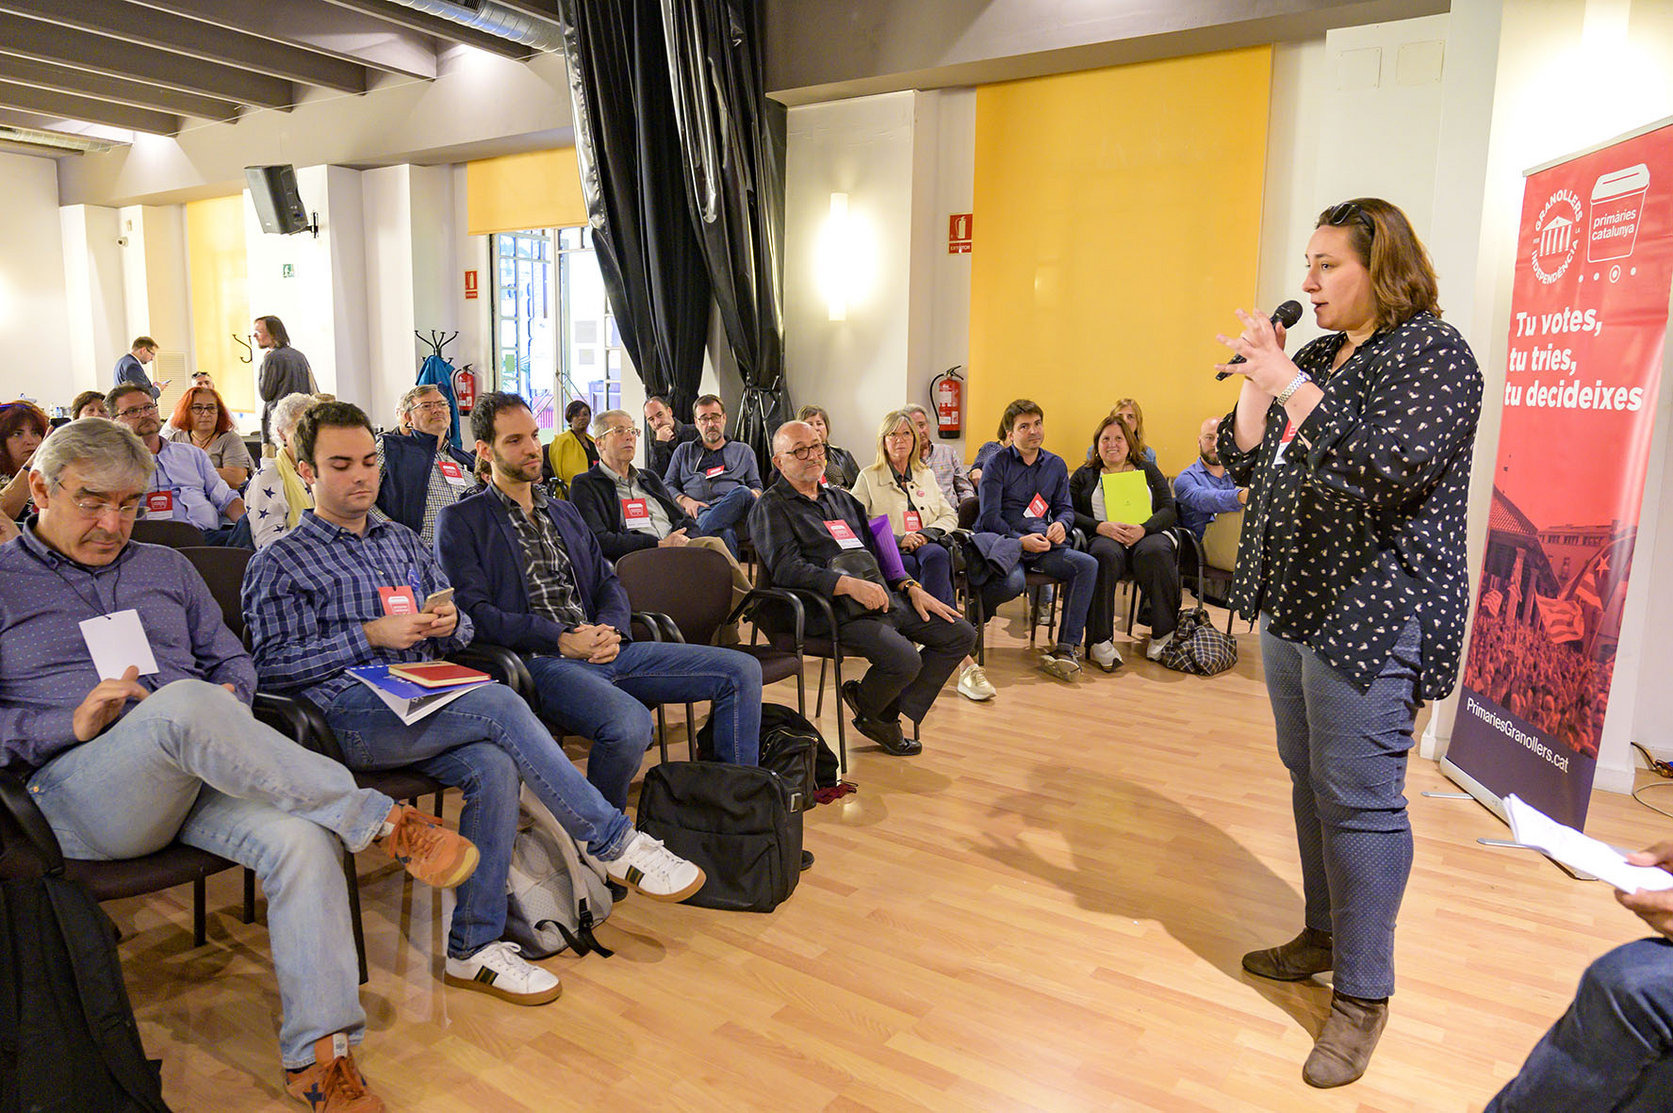 Primàries Catalunya va fer una trobada a Granollers el dia 27 d'octubre